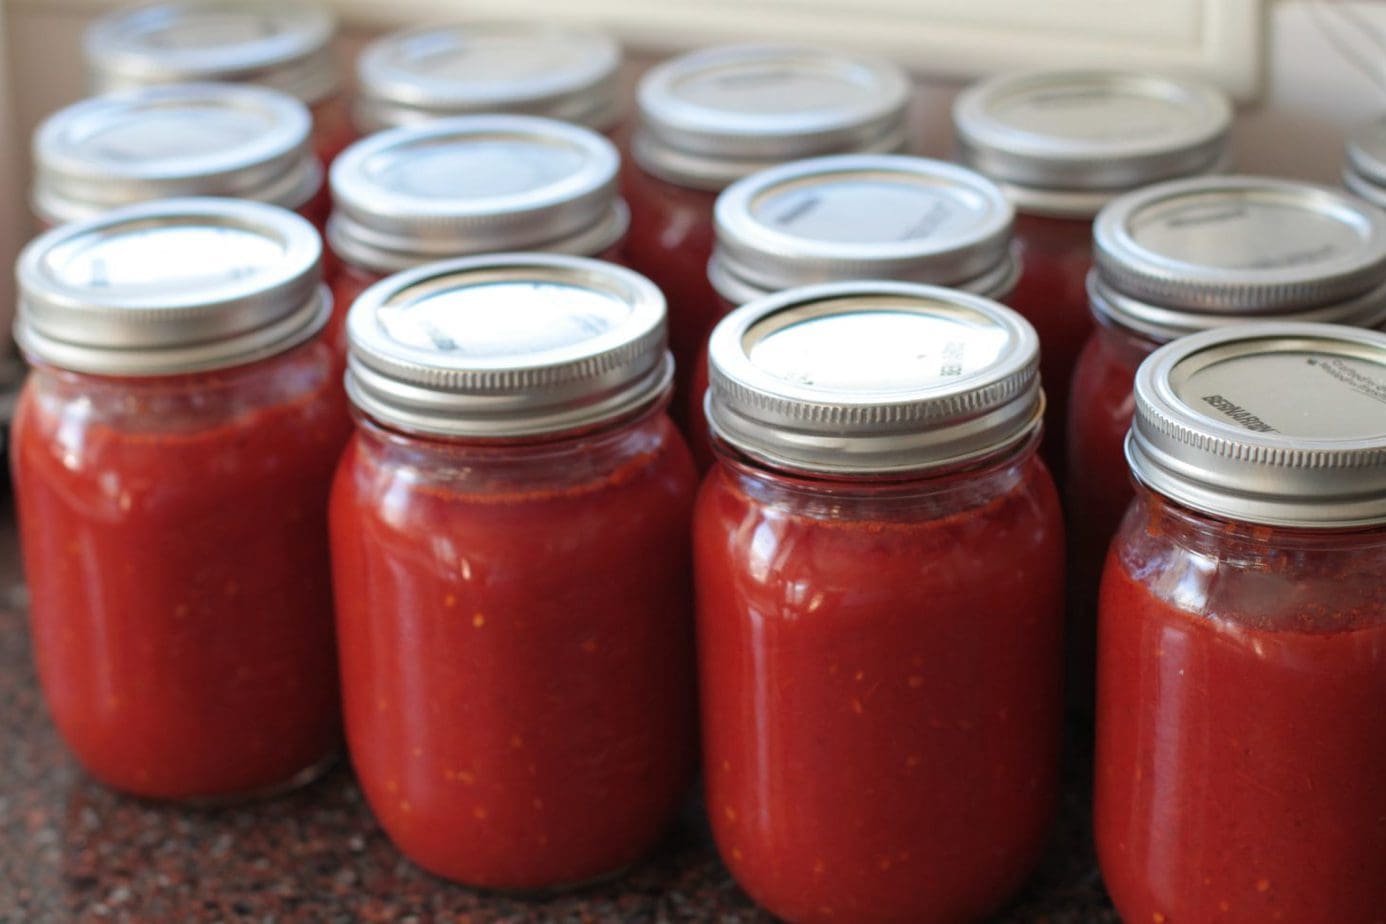 Jars of bright red Roma Tomato Passata Sauce on a kitchen counter.